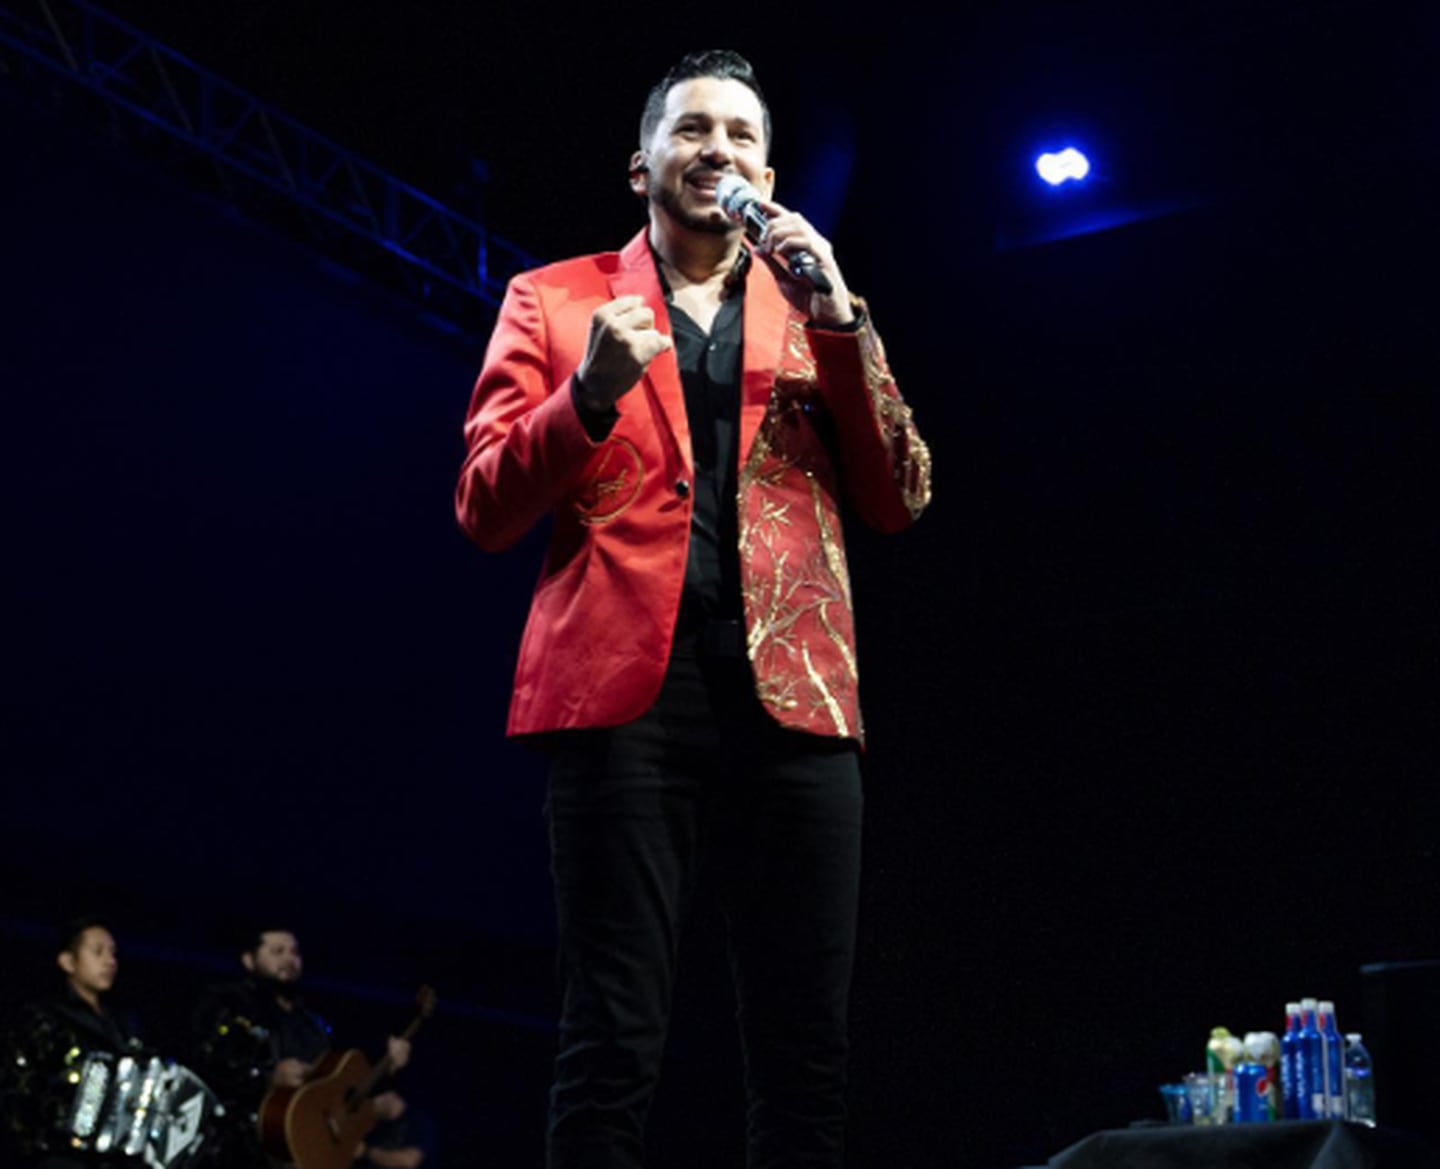 Luis Ángel "El Flaco", cantante mexicano, anuncia la muerte de su hija. Instagram